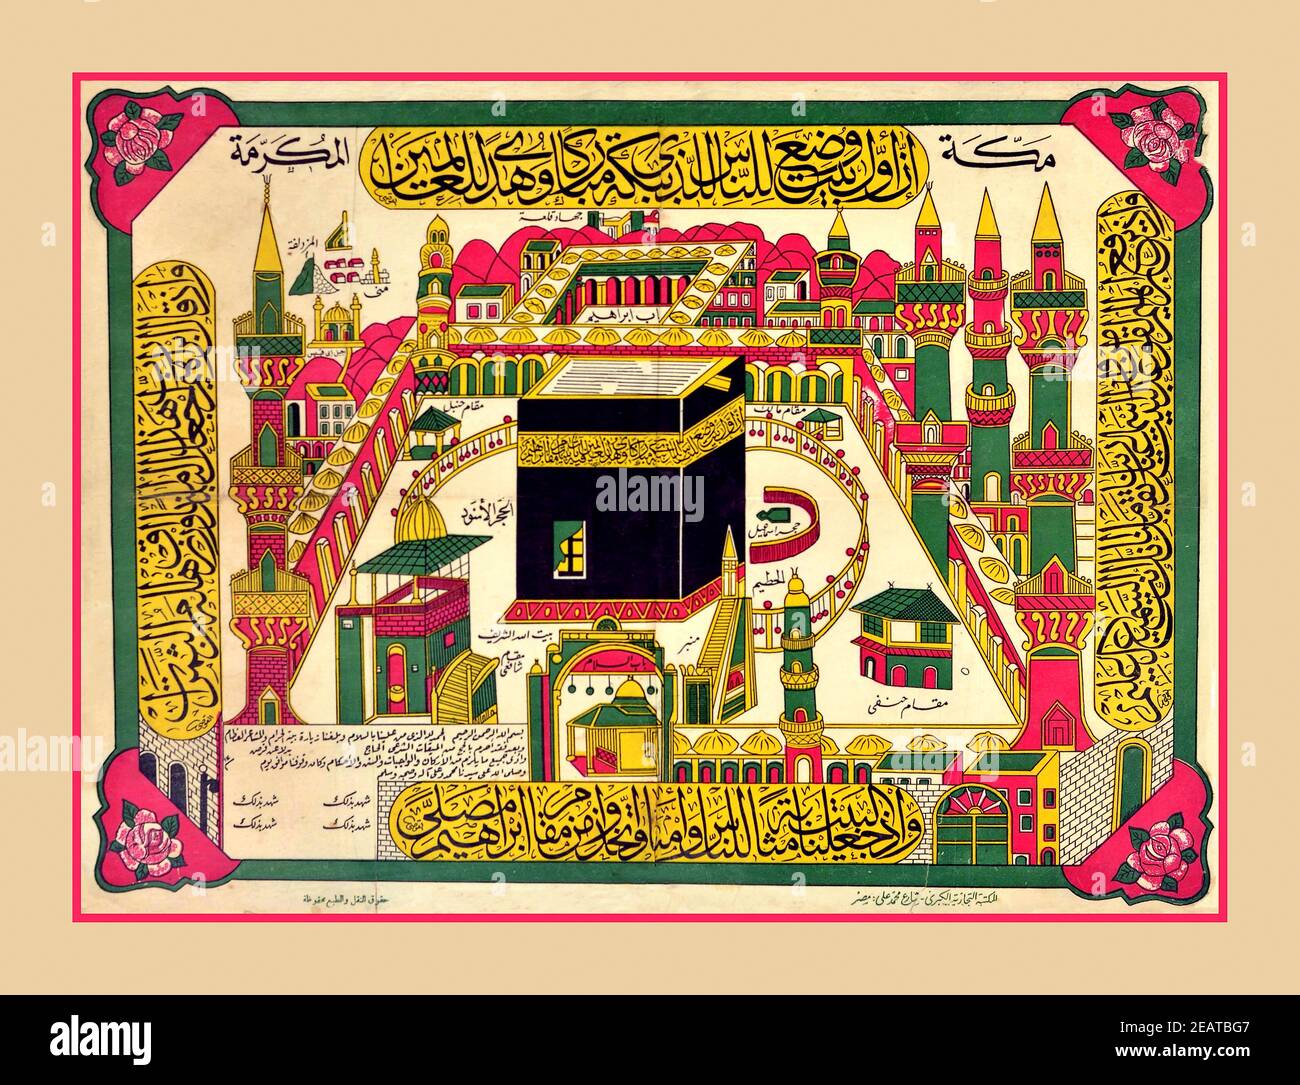 Poster di viaggio della MECCA del 1900 Kaaba Hajj pellegrinaggio Mecca. Poster d'epoca con vista su Kaab in Mecca. Illustrazione dettagliata della moschea Masjid al-Haram in Mecca, Arabia Saudita con testo arabo. Il poster è stato ottenuto da uno dei pellegrini in visita alla Mecca. Il Kaaba, è un edificio al centro della moschea più importante dell'Islam, la Masjid al-Haram in Mecca, Arabia Saudita. È il luogo più sacro dell'Islam. È considerato dai musulmani essere il Bayt Allah - la Casa di Dio ed è il qibla (direzione della preghiera) per i musulmani intorno al mondo quando si esegue la salah. Arabia Saudita, 1900 Foto Stock